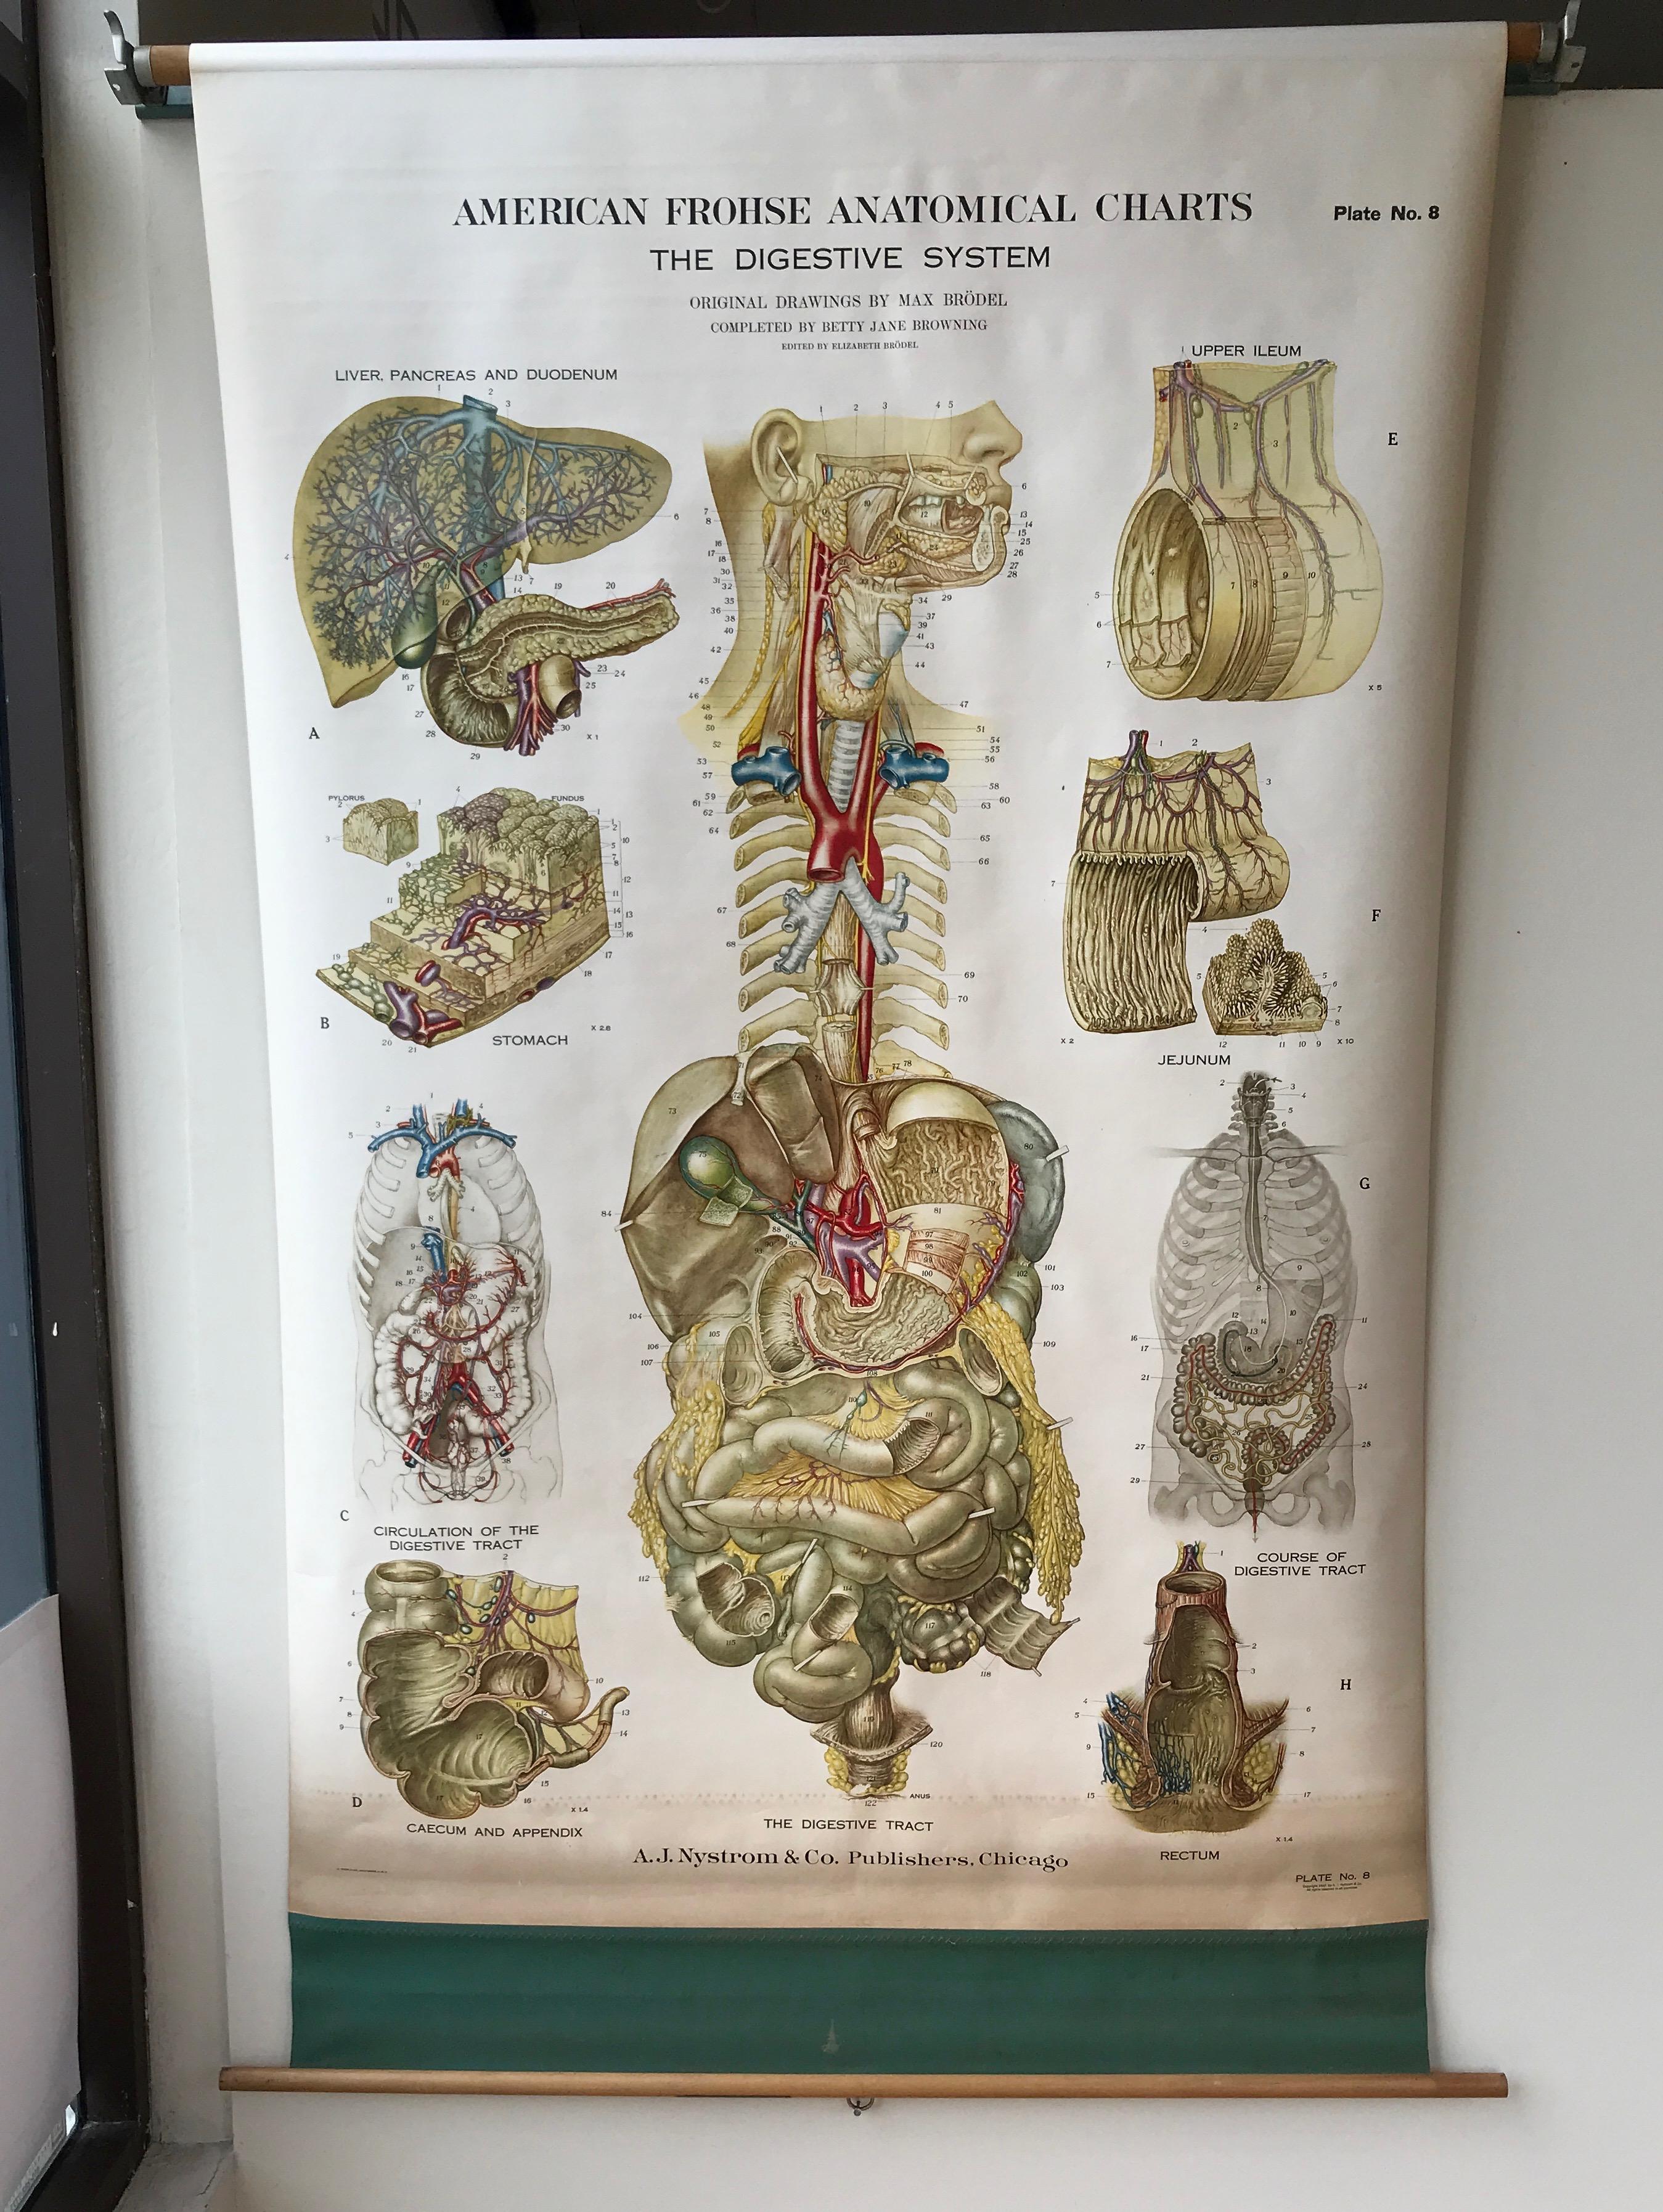 Eine beeindruckend große und sorgfältig ausgeführte amerikanische Frohse-Anatomietafel, die das menschliche Verdauungssystem darstellt, herausgegeben von A.J. Nystrom & Co., Chicago.

Tafel Nr. 8 einer einflussreichen Serie großer, hochdetaillierter